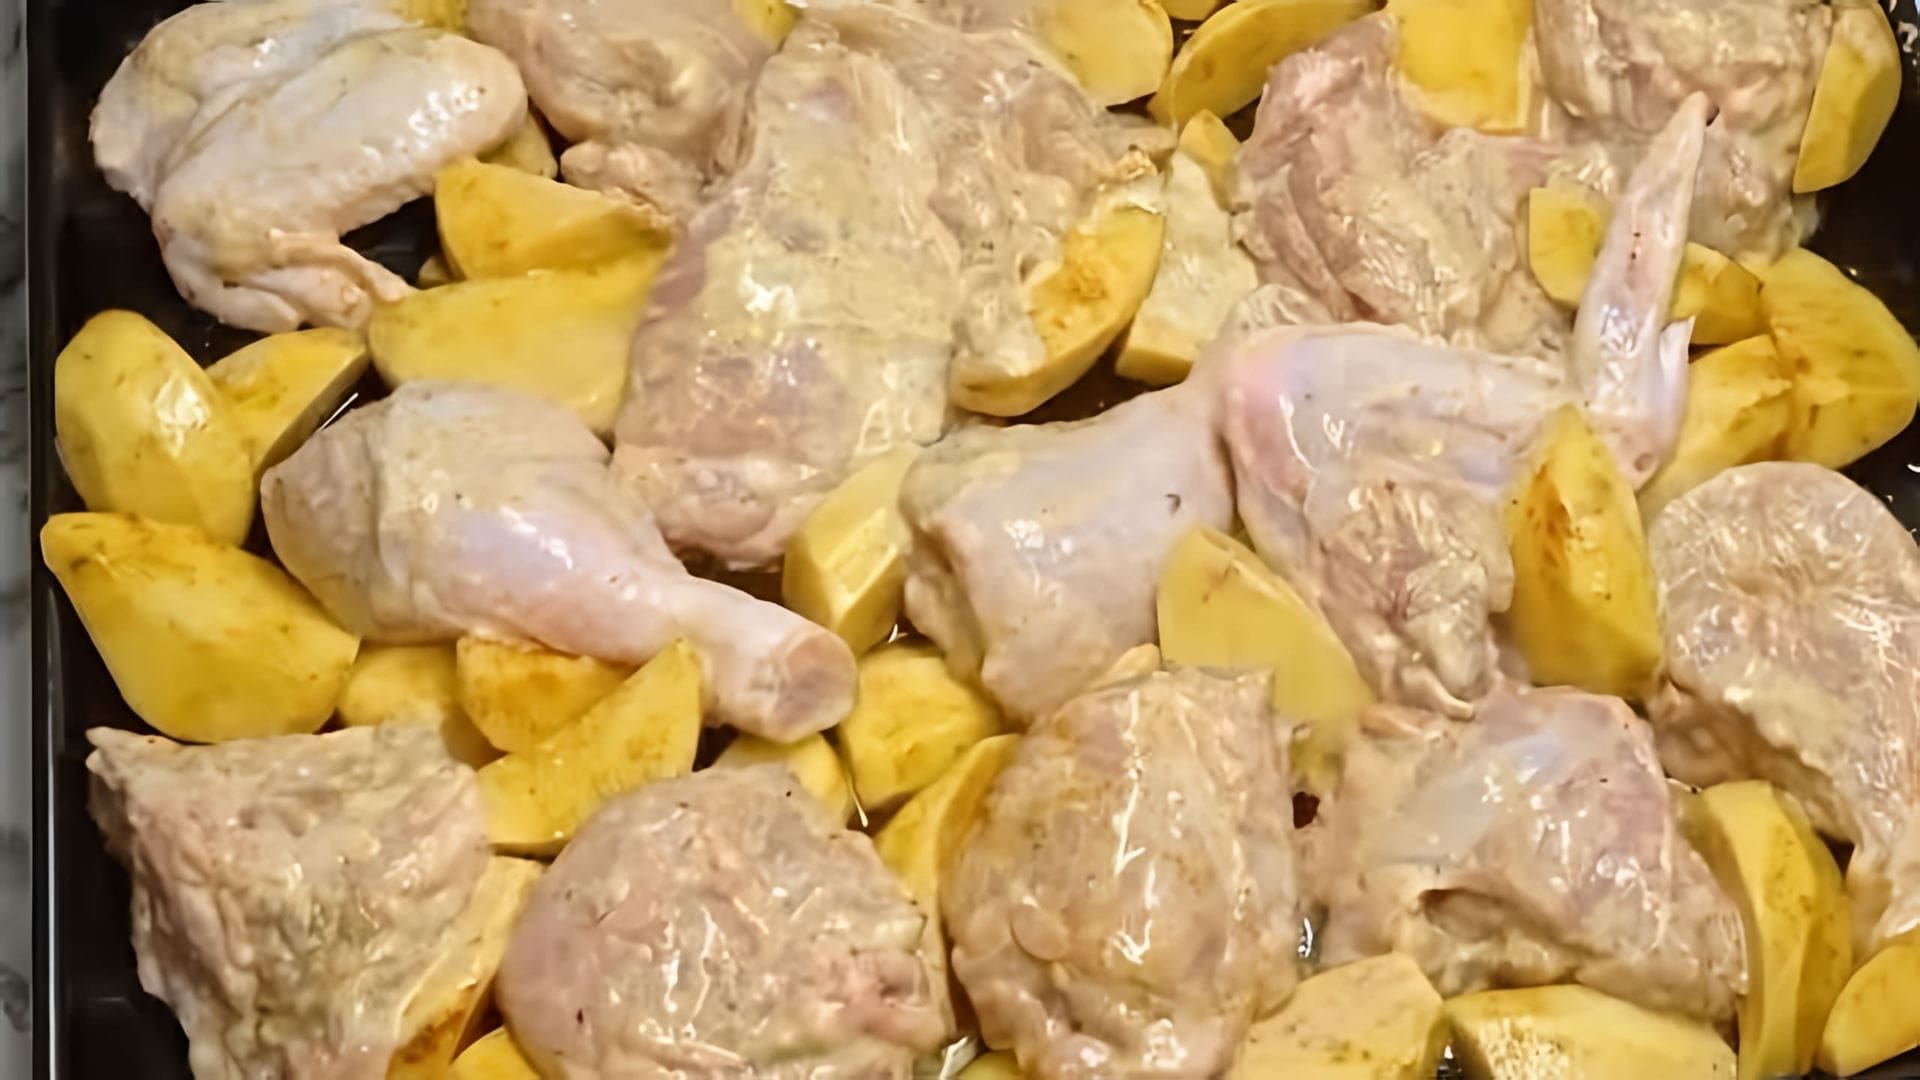 Рецепт: Курица картошка соль, специи по вкусу Мясо оставить мариноваться час 2-3 #Обед #Шашлык #Курица НА КАНАЛЕ... 